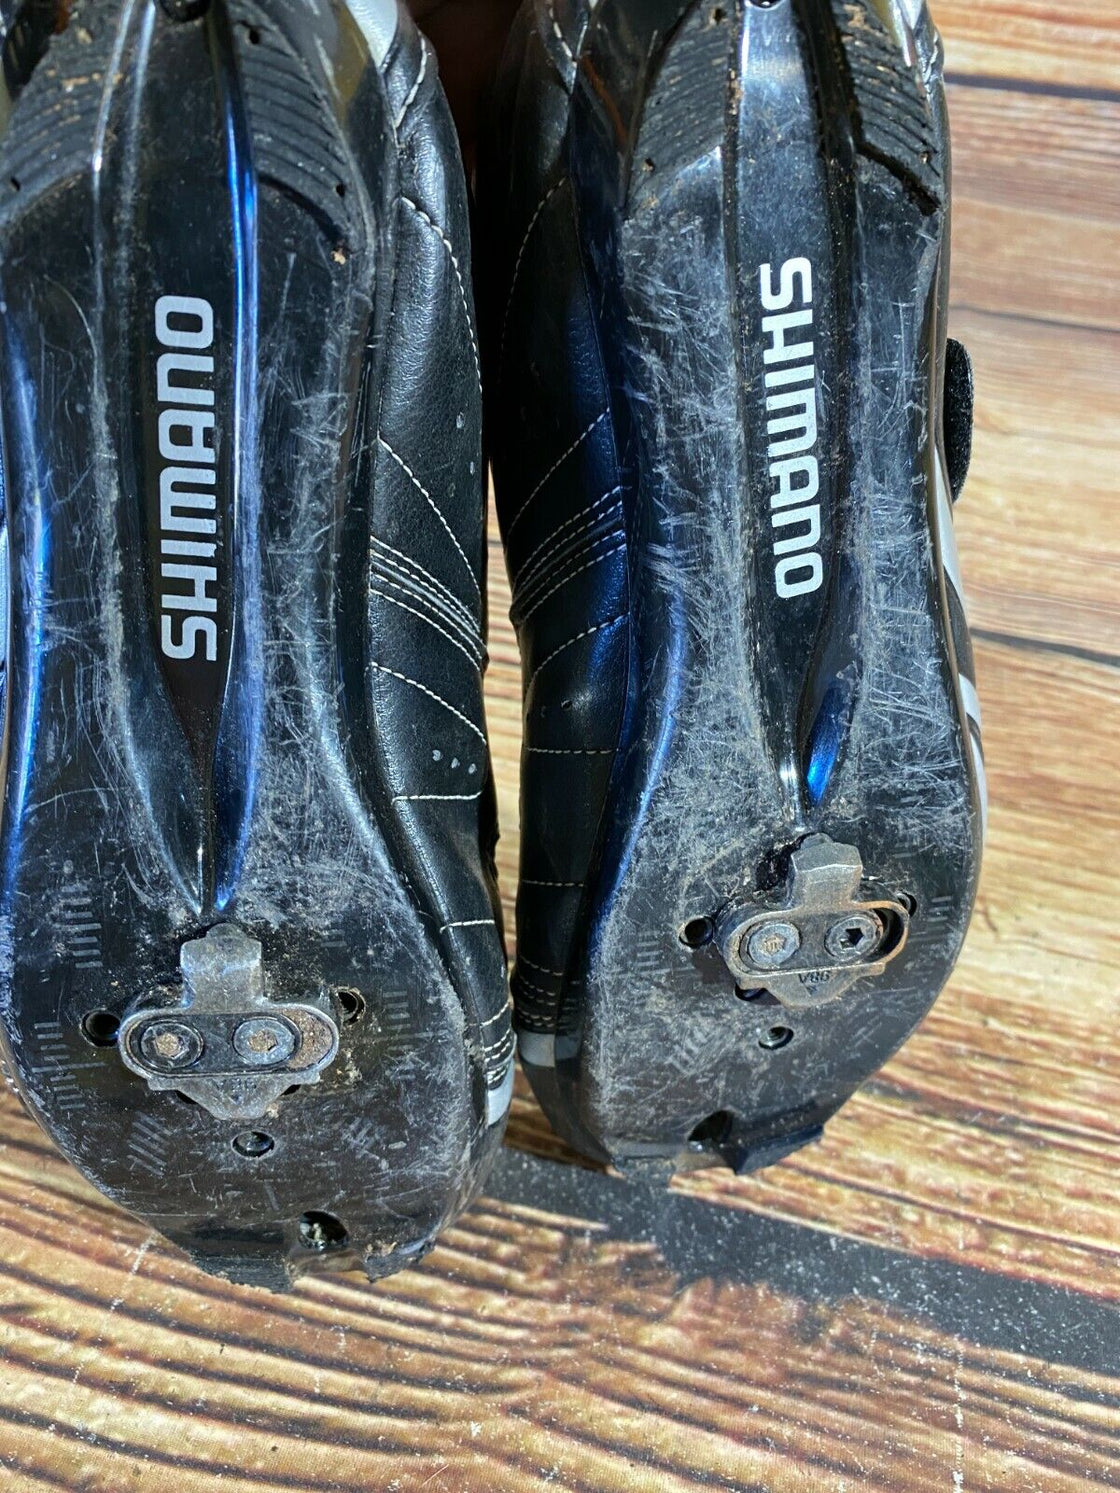 SHIMANO R076 Road Cycling Shoes Biking Boots 3 Bolts Size EU38, US5.2